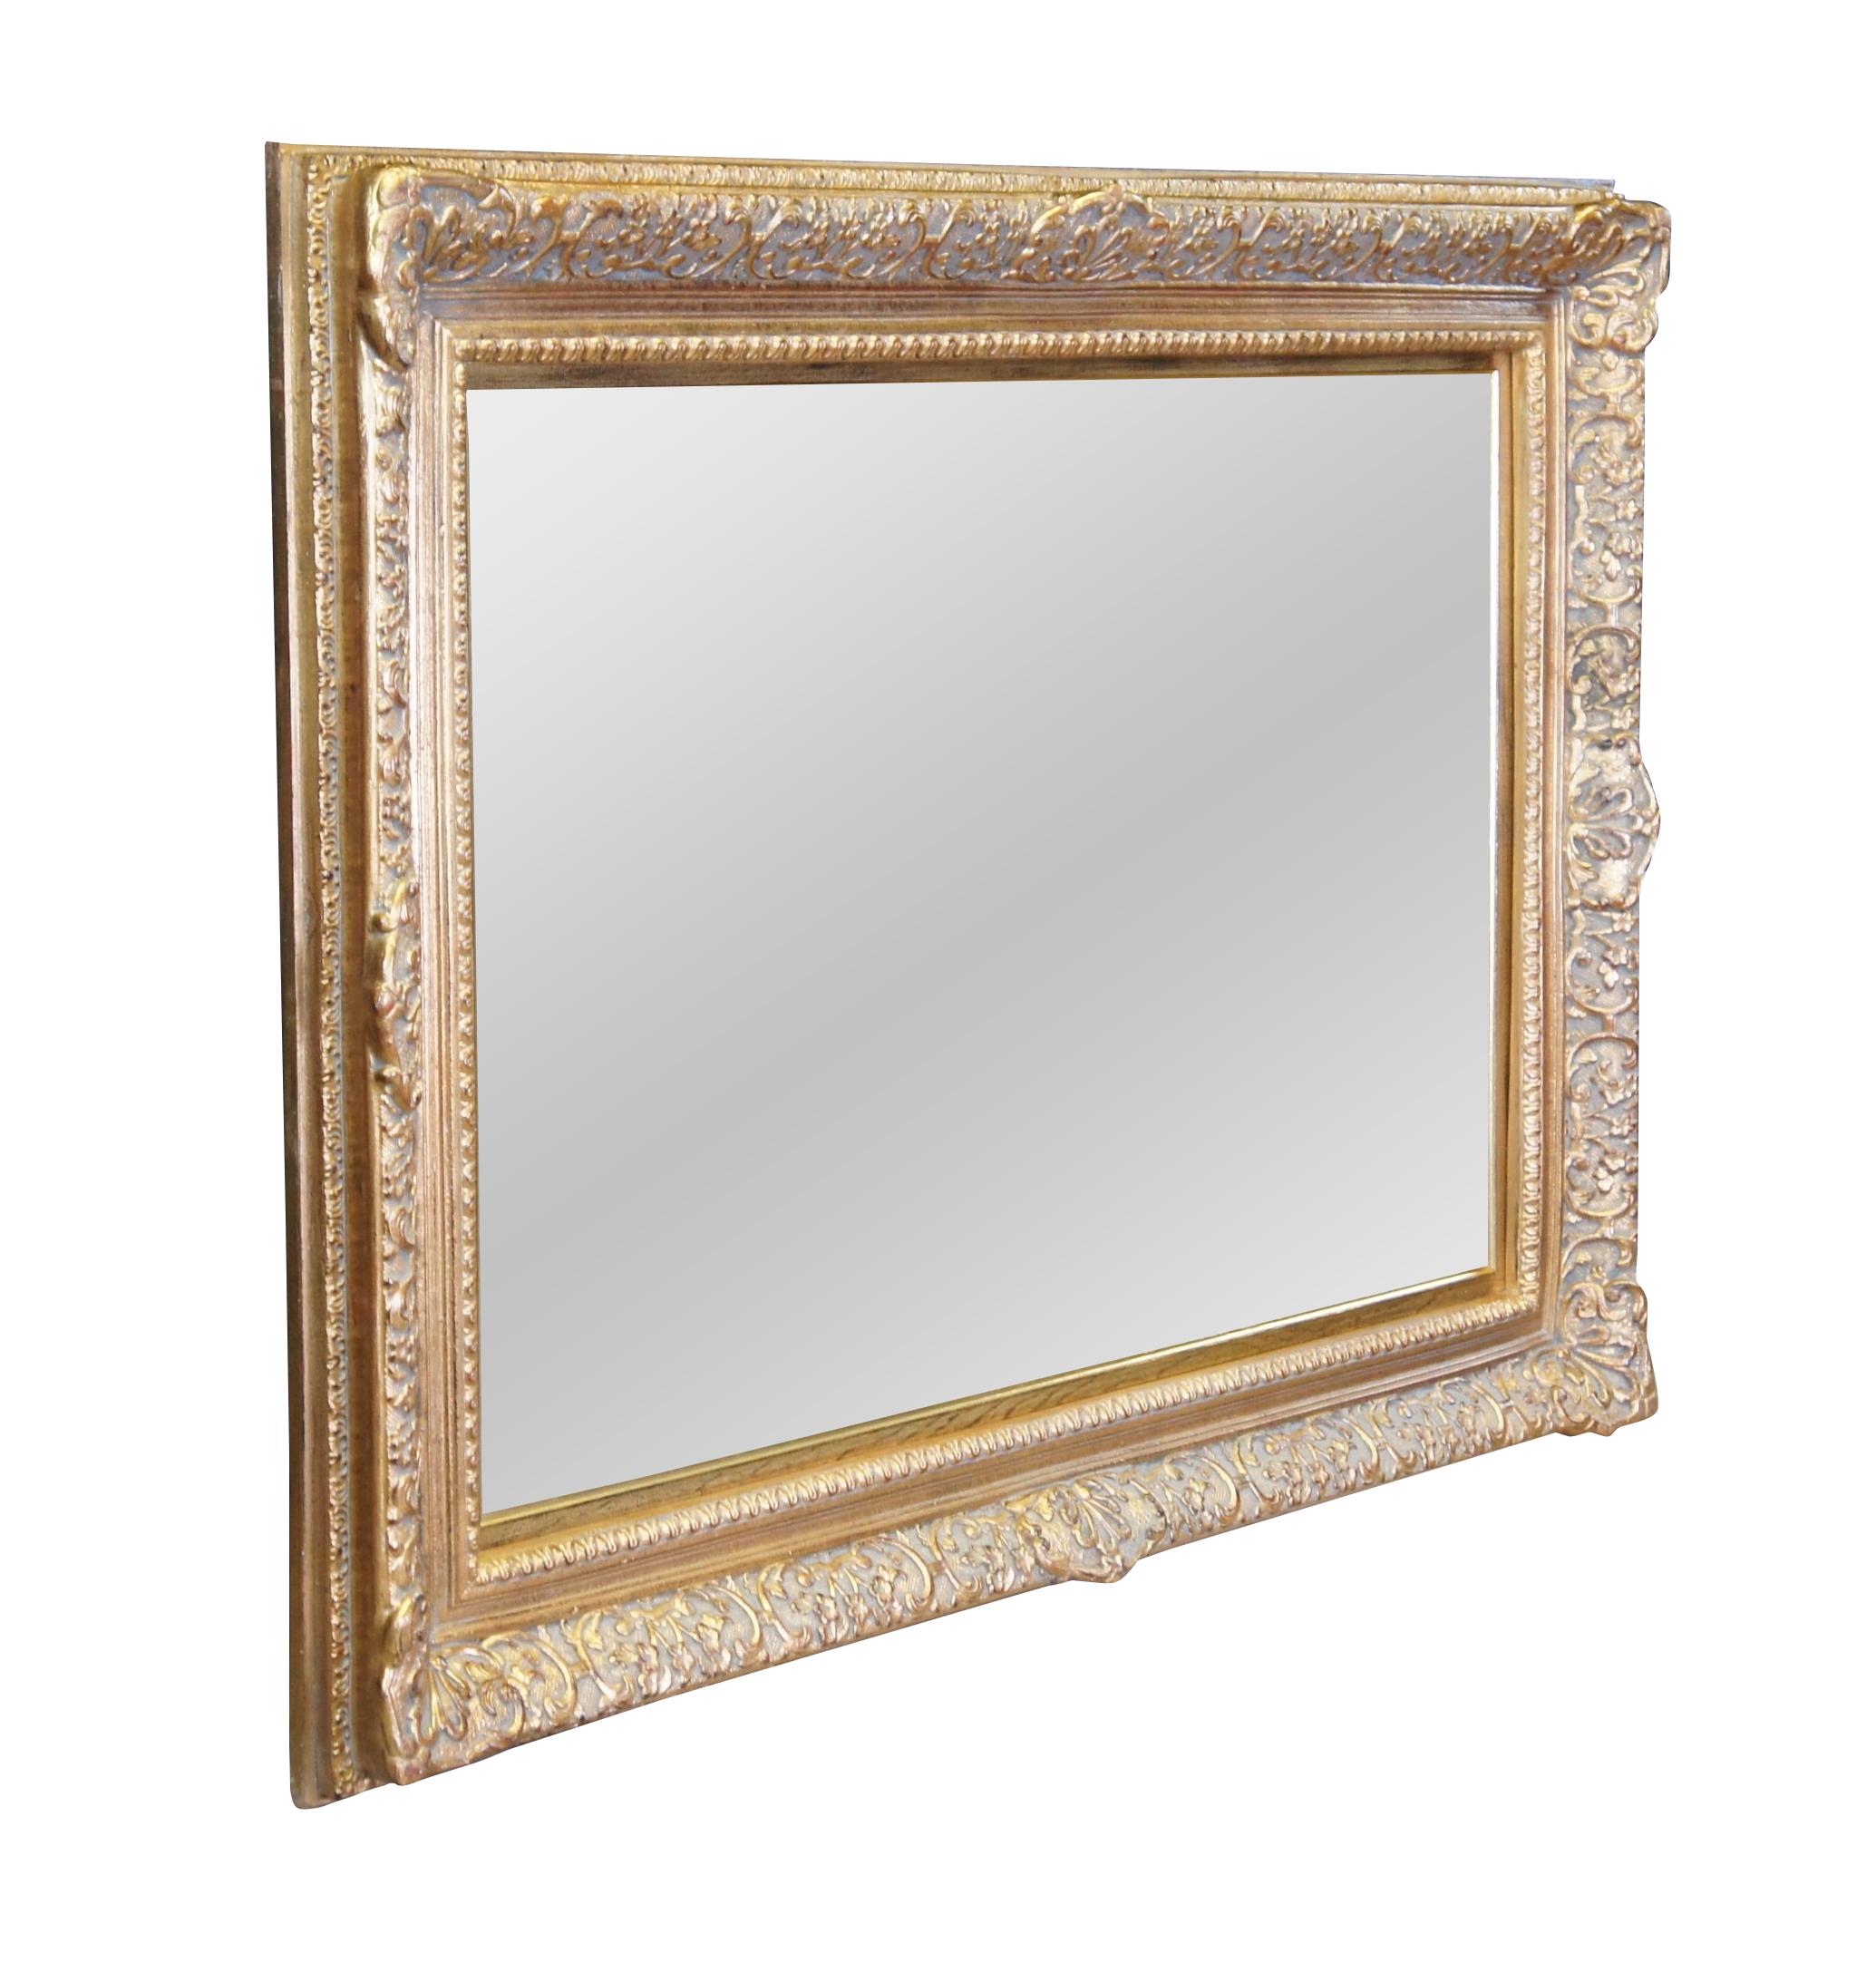 Ein Spiegel im italienischen Barockstil.  Mit einem verzierten Goldrahmen aus Kiefernholz und einem abgeschrägten Spiegel aus Glasplatte.  Can vertikal oder horizontal aufgehängt werden.  Ideal für eine Konsole, ein Badezimmer, ein Schlafzimmer oder